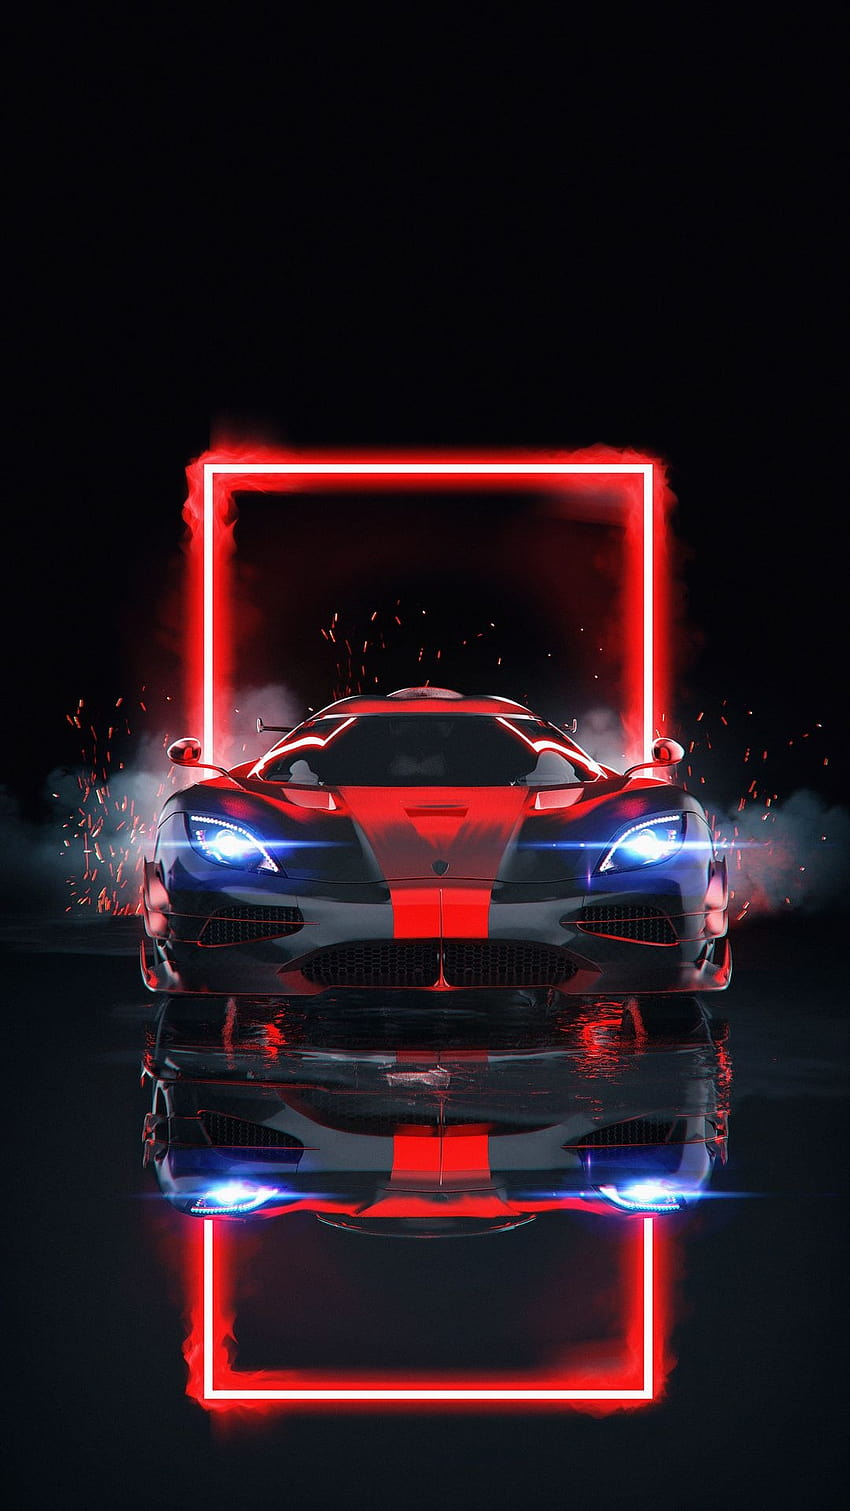 Car Racing Off-road 4K Ultra HD Mobile Wallpaper